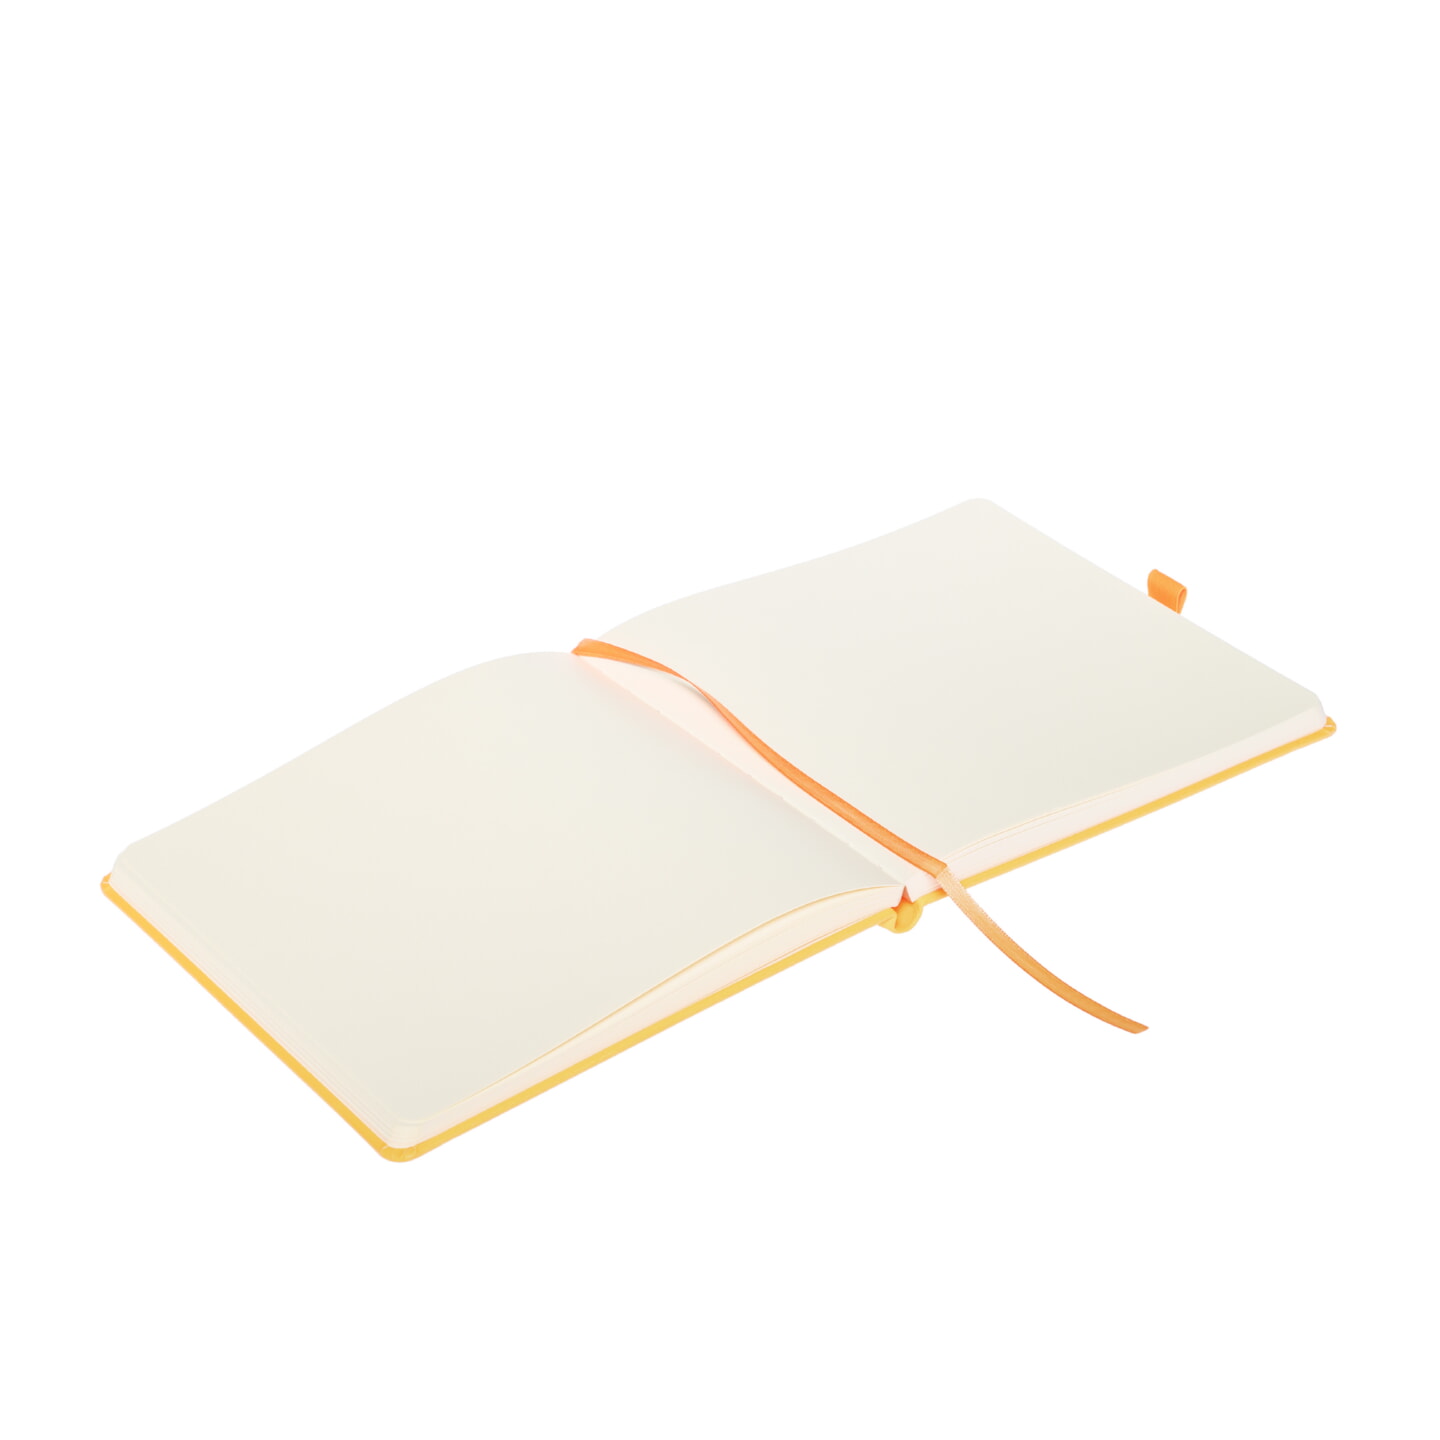 Блокнот для зарисовок Sketchmarker 140г/кв.м 20*20cм 80л твердая обложка Оранжевый